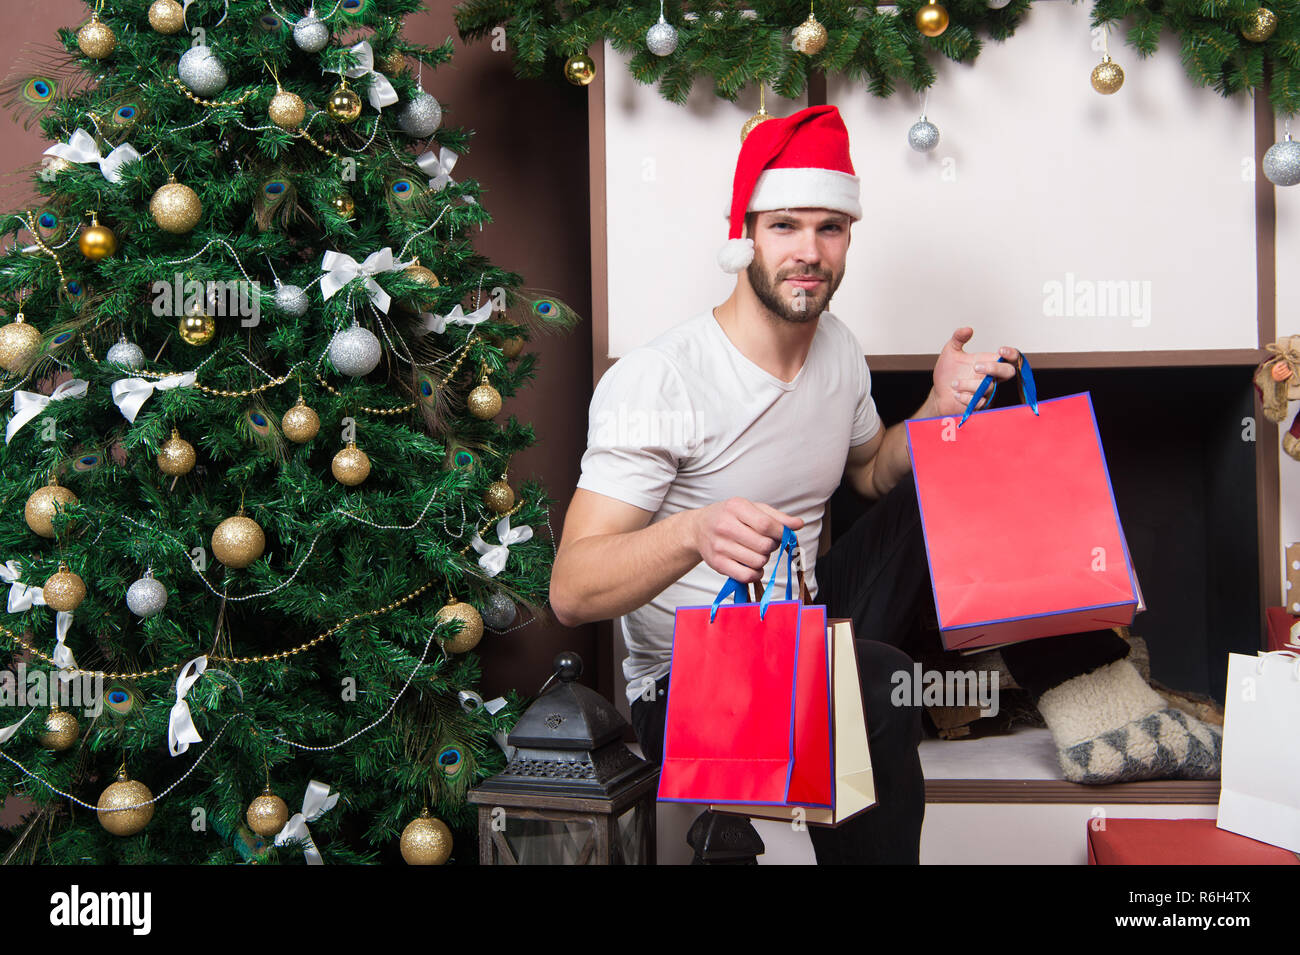 Immagini Natalizie Tenere.La Mattina Prima Di Natale L Uomo In Santa Hat Tenere Presente Di Natale Online Shopping